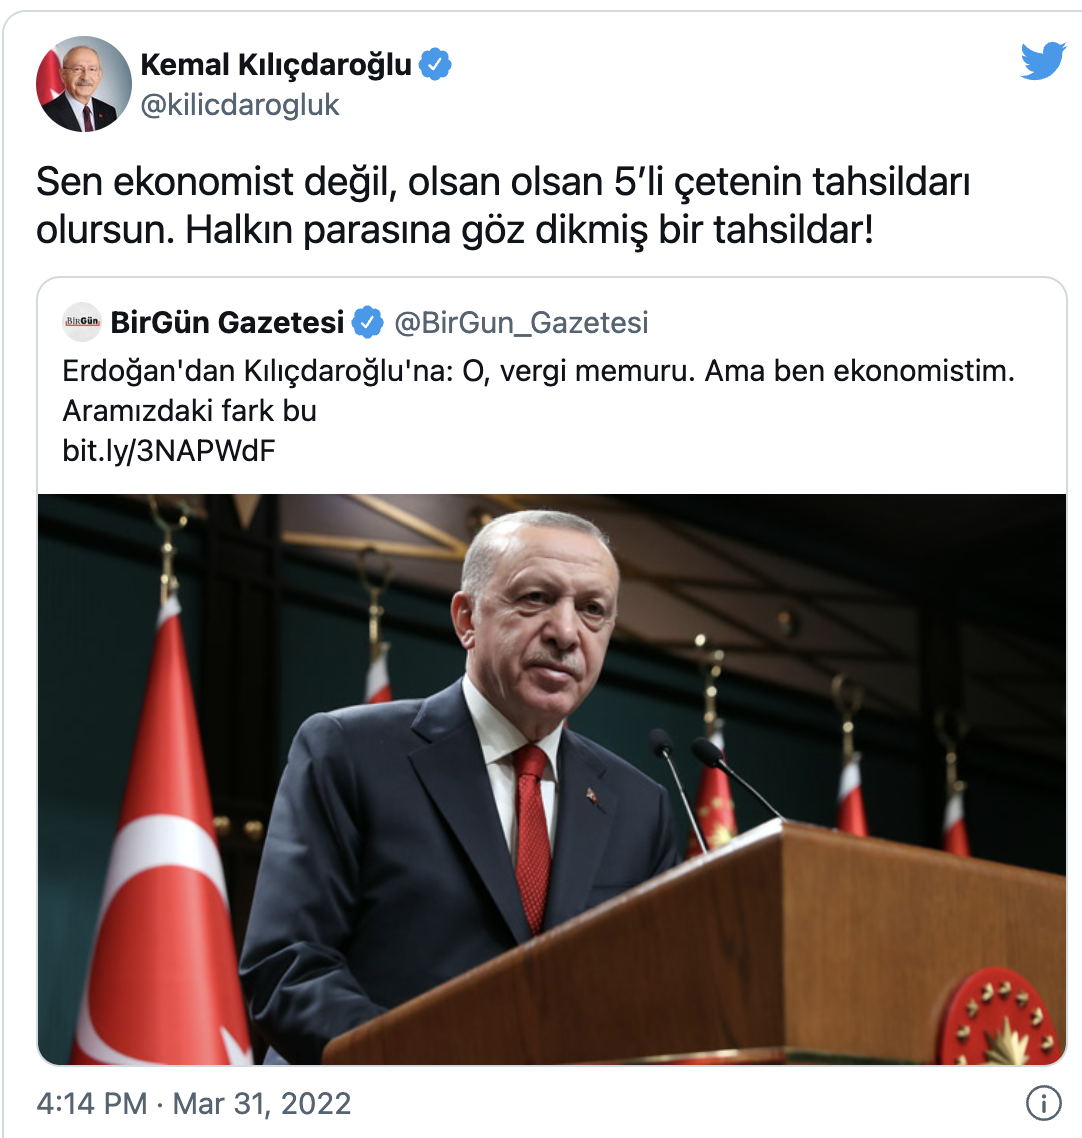 Erdoğan'dan "Sen ekonomist değil, olsan olsan 5’li çetenin tahsildarı olursun" diyen Kılıçdaroğlu'na 1 milyon liralık dava